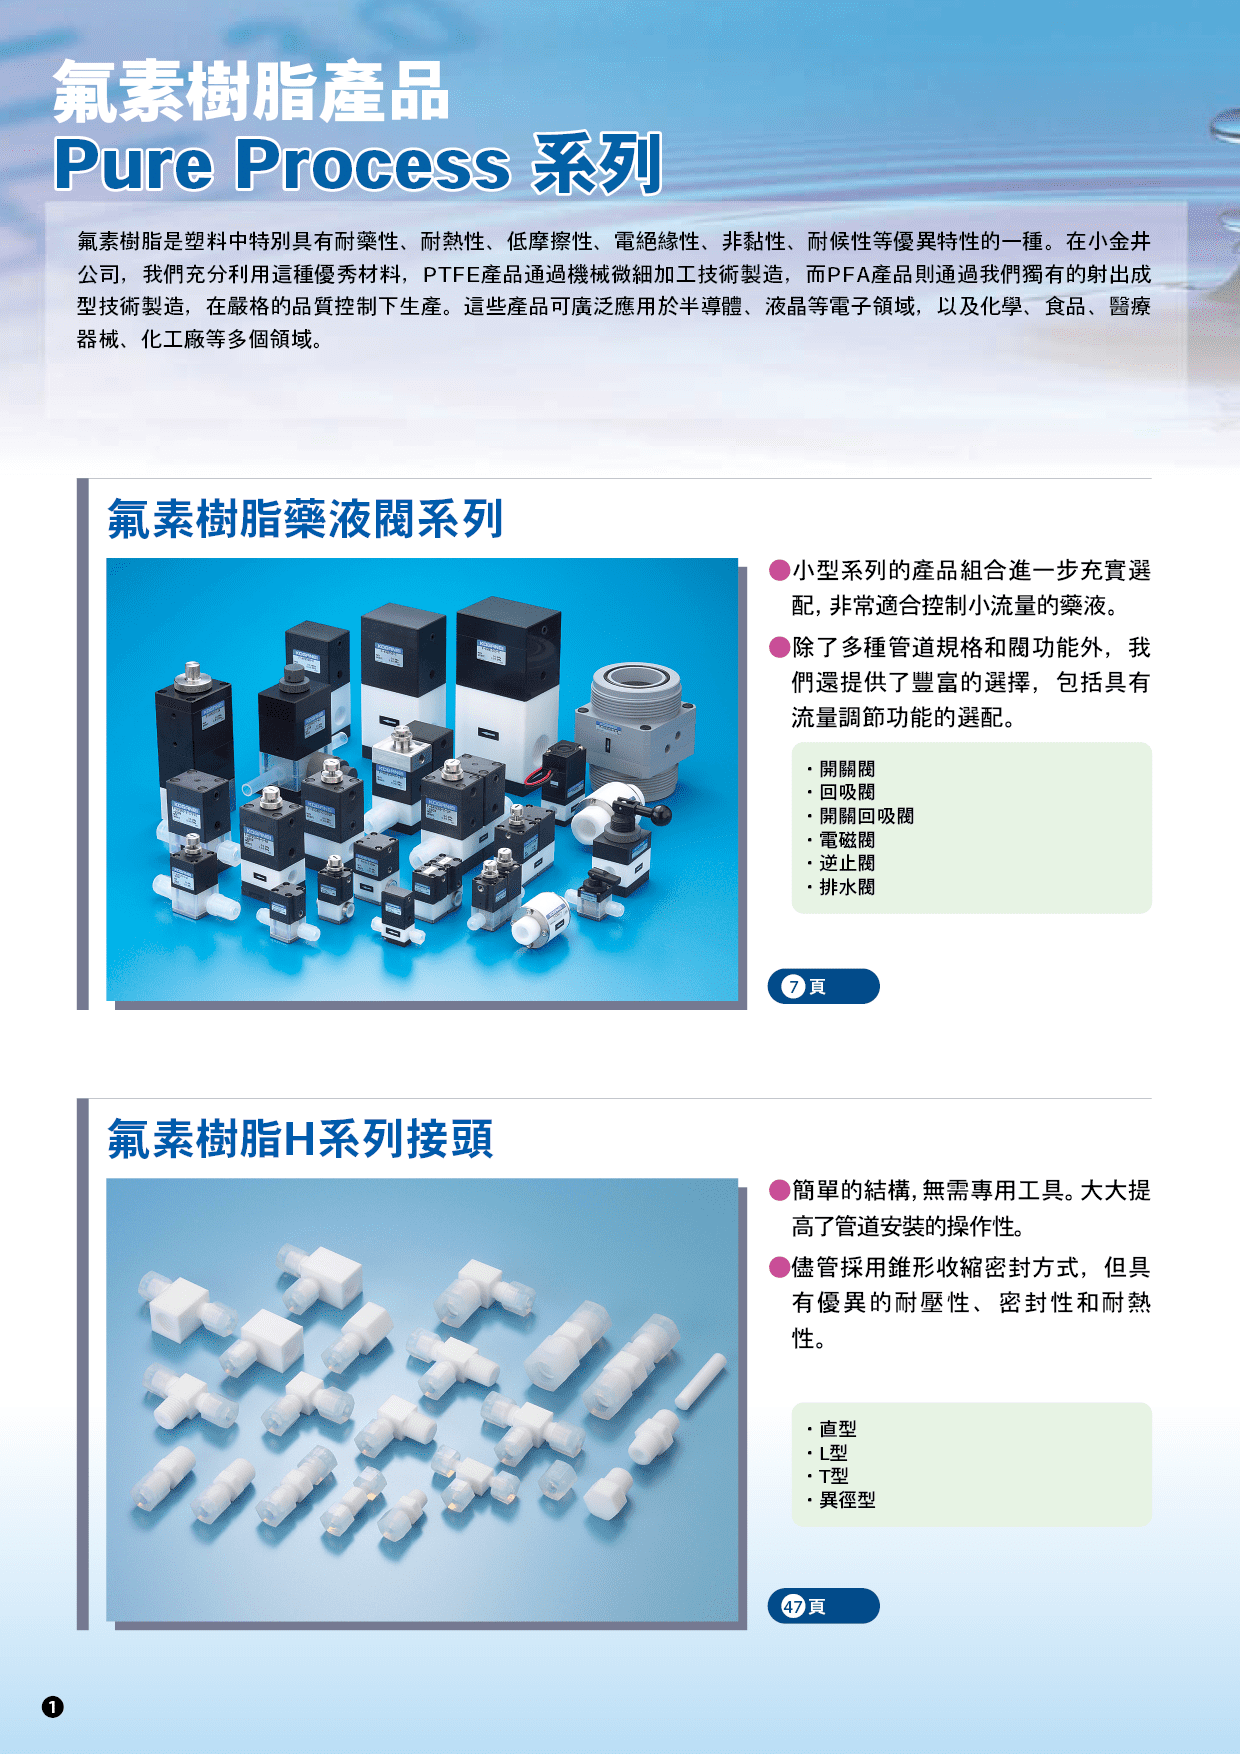 氟素樹脂產品Pure Process系列-產品特色2